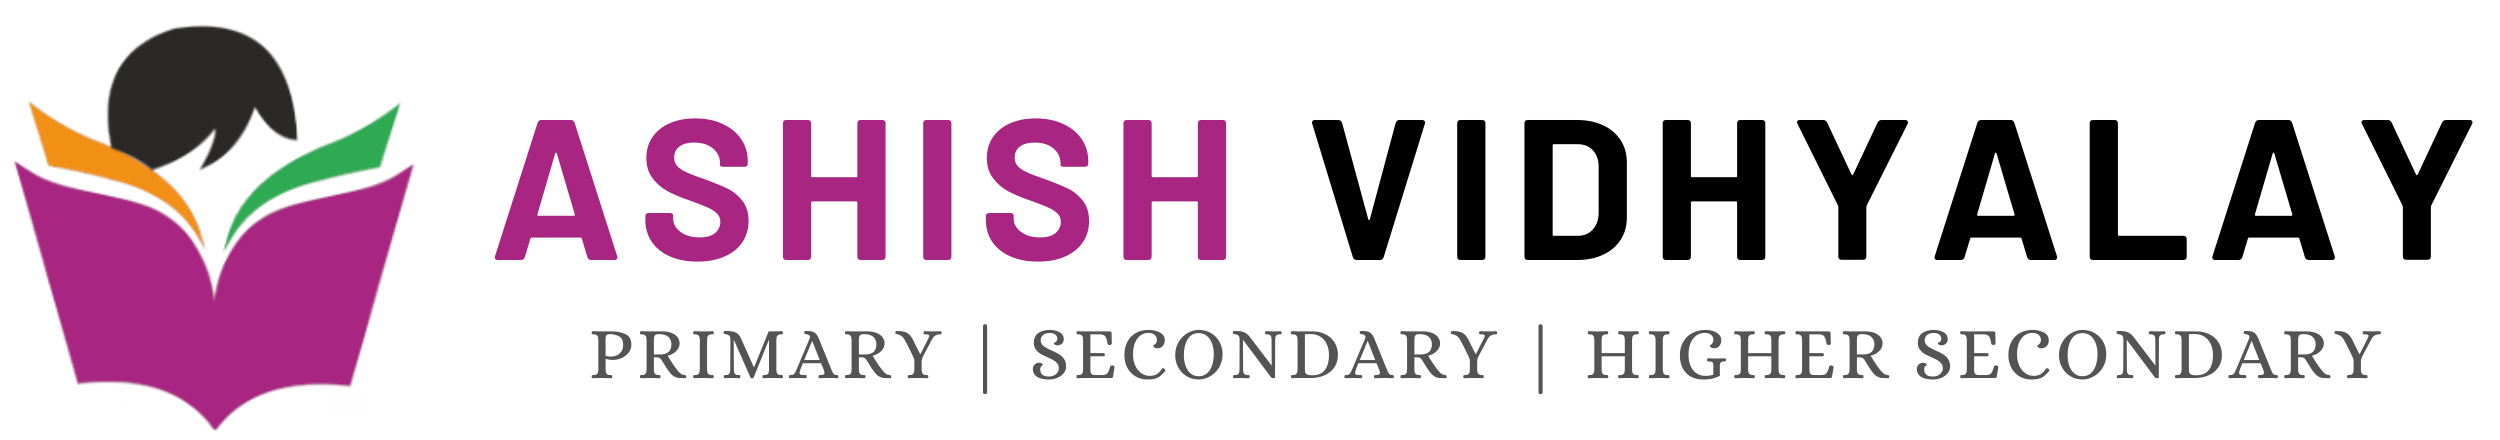 Ashish_logo